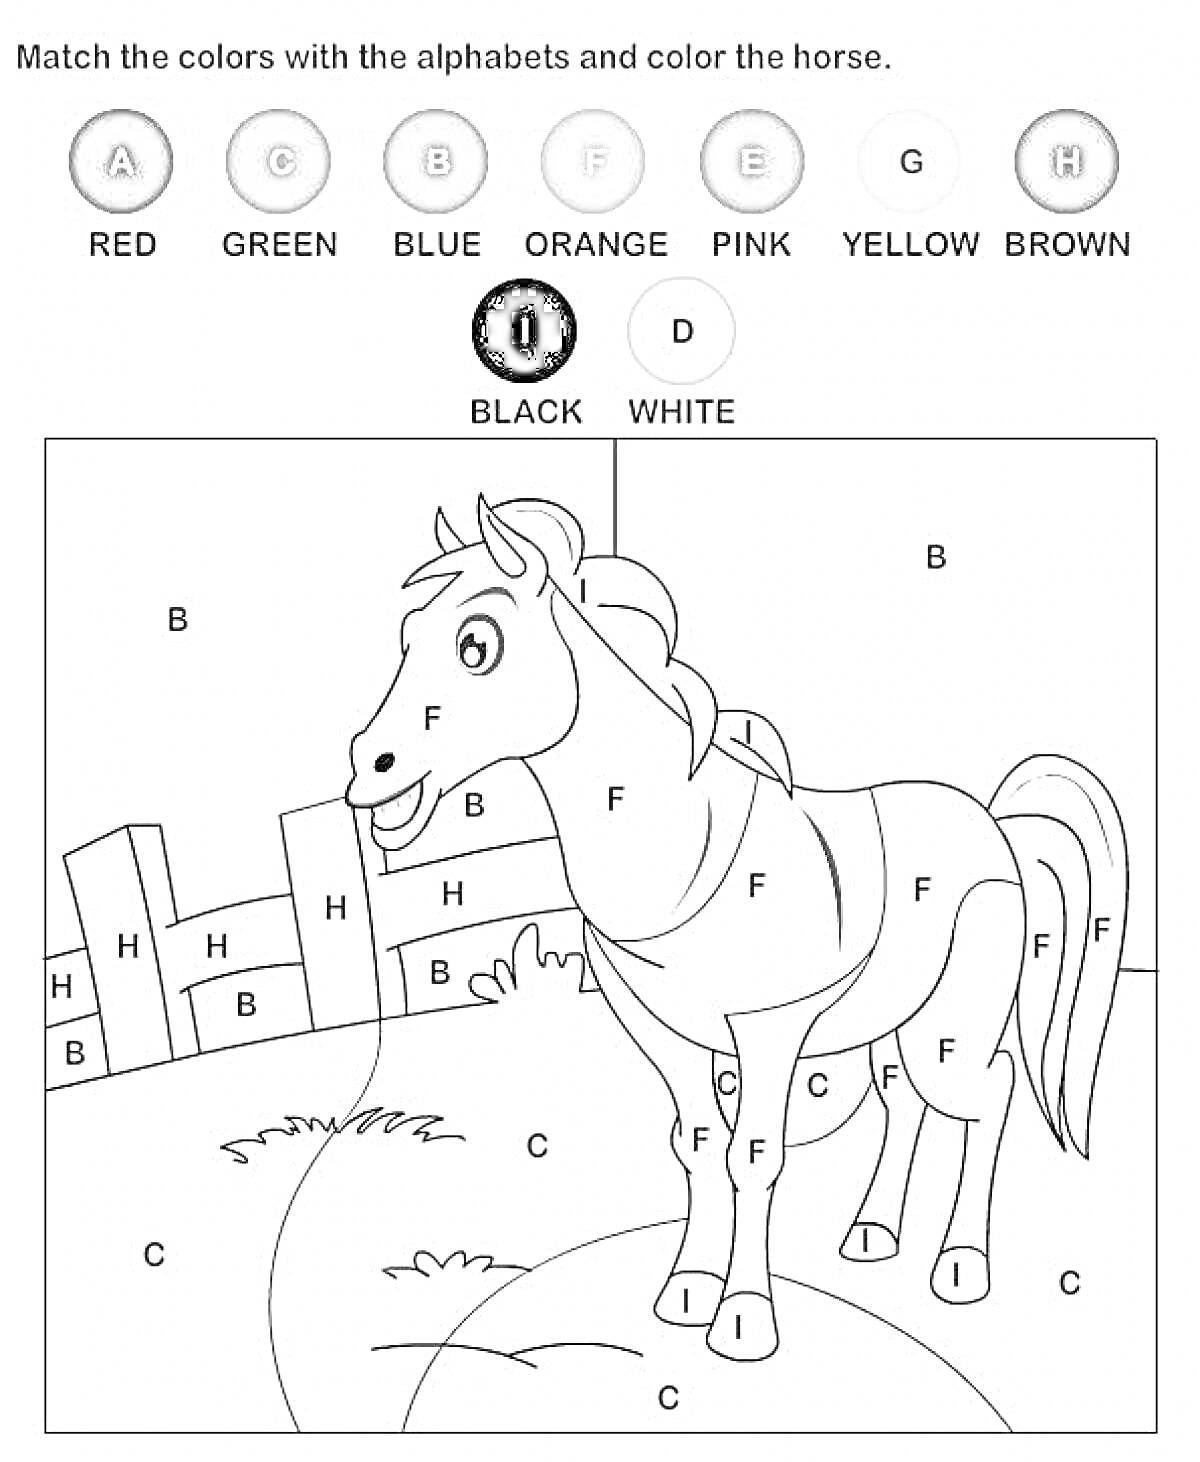 Раскраска Лошадь на поле с забором, буквы обозначают цвета